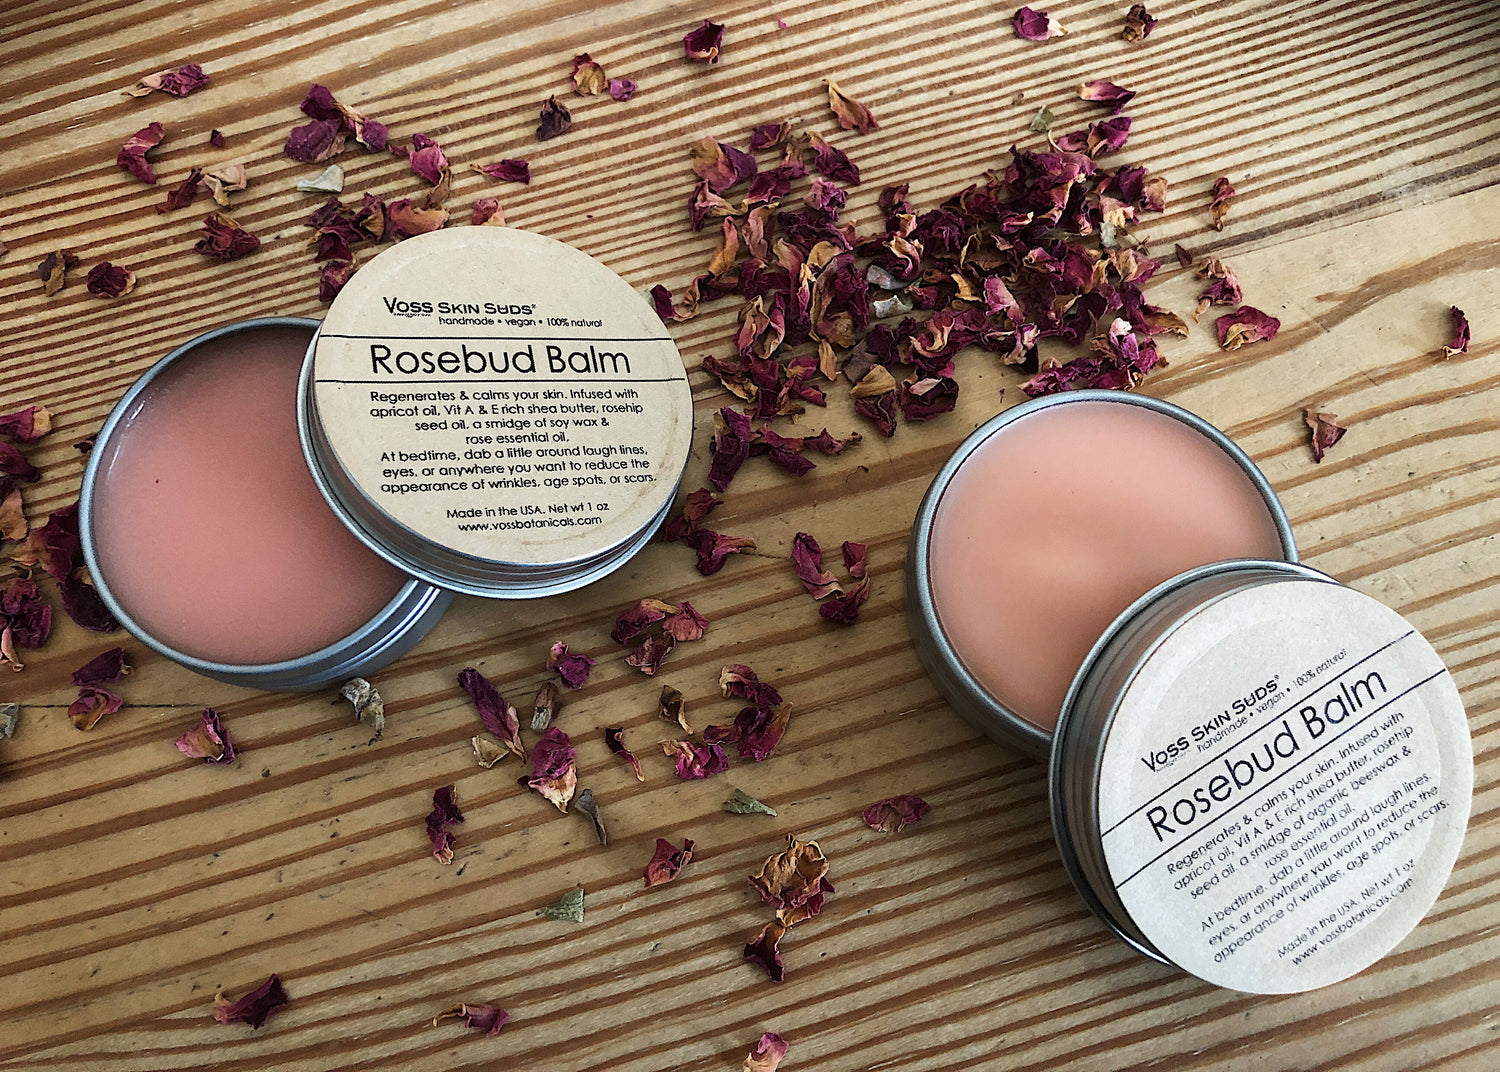 Rosebud balm helps even skin tone